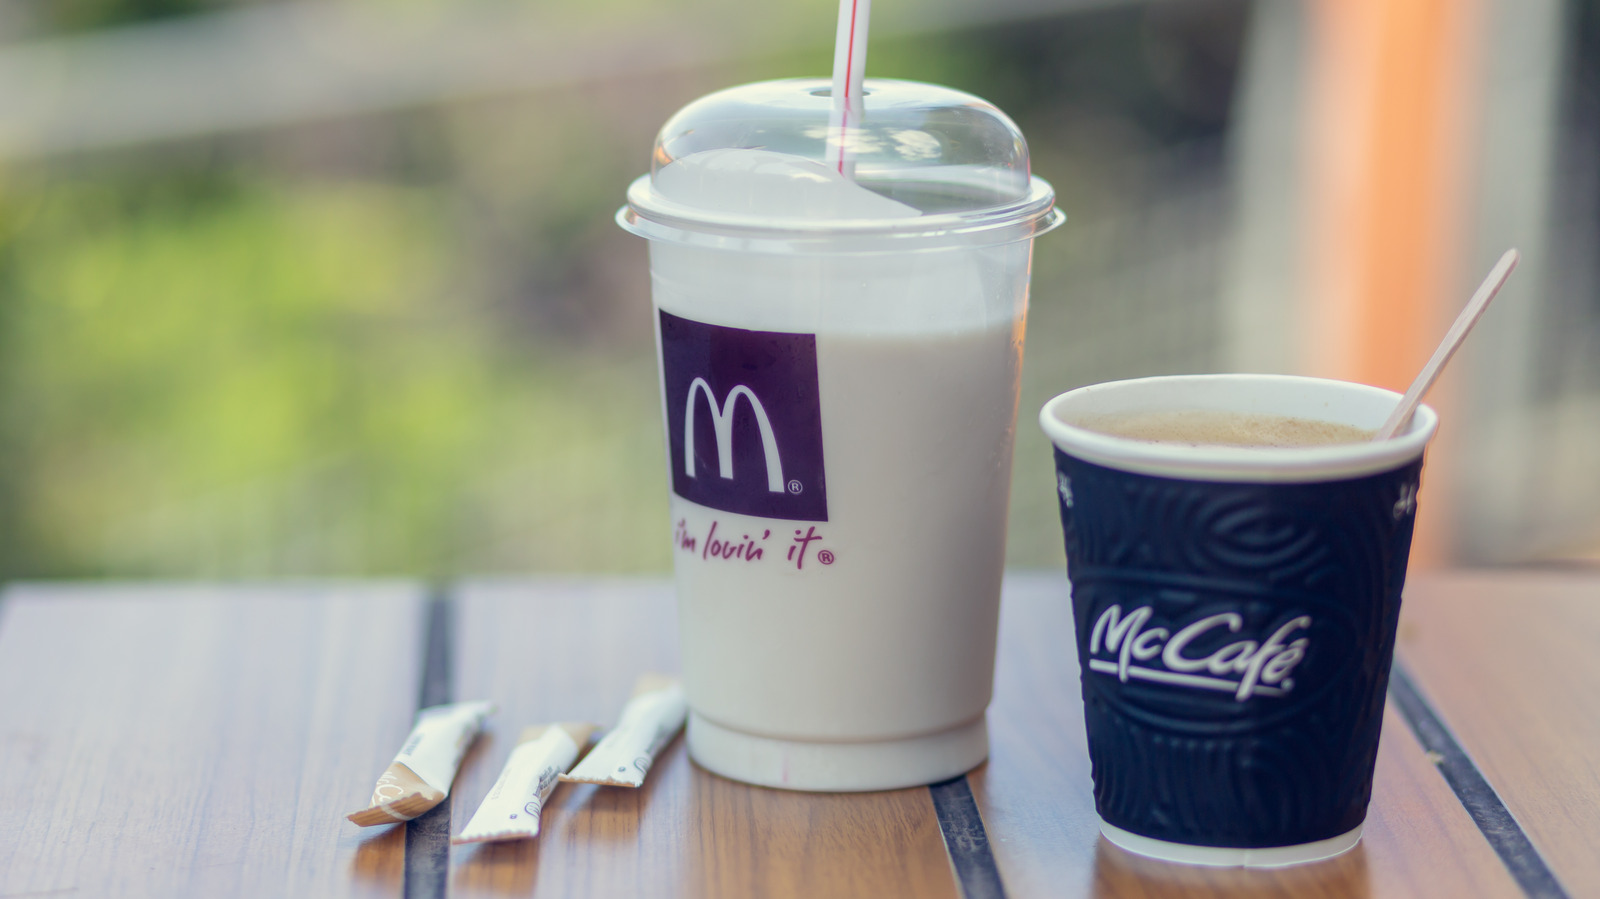 mcdonalds milkshake case study